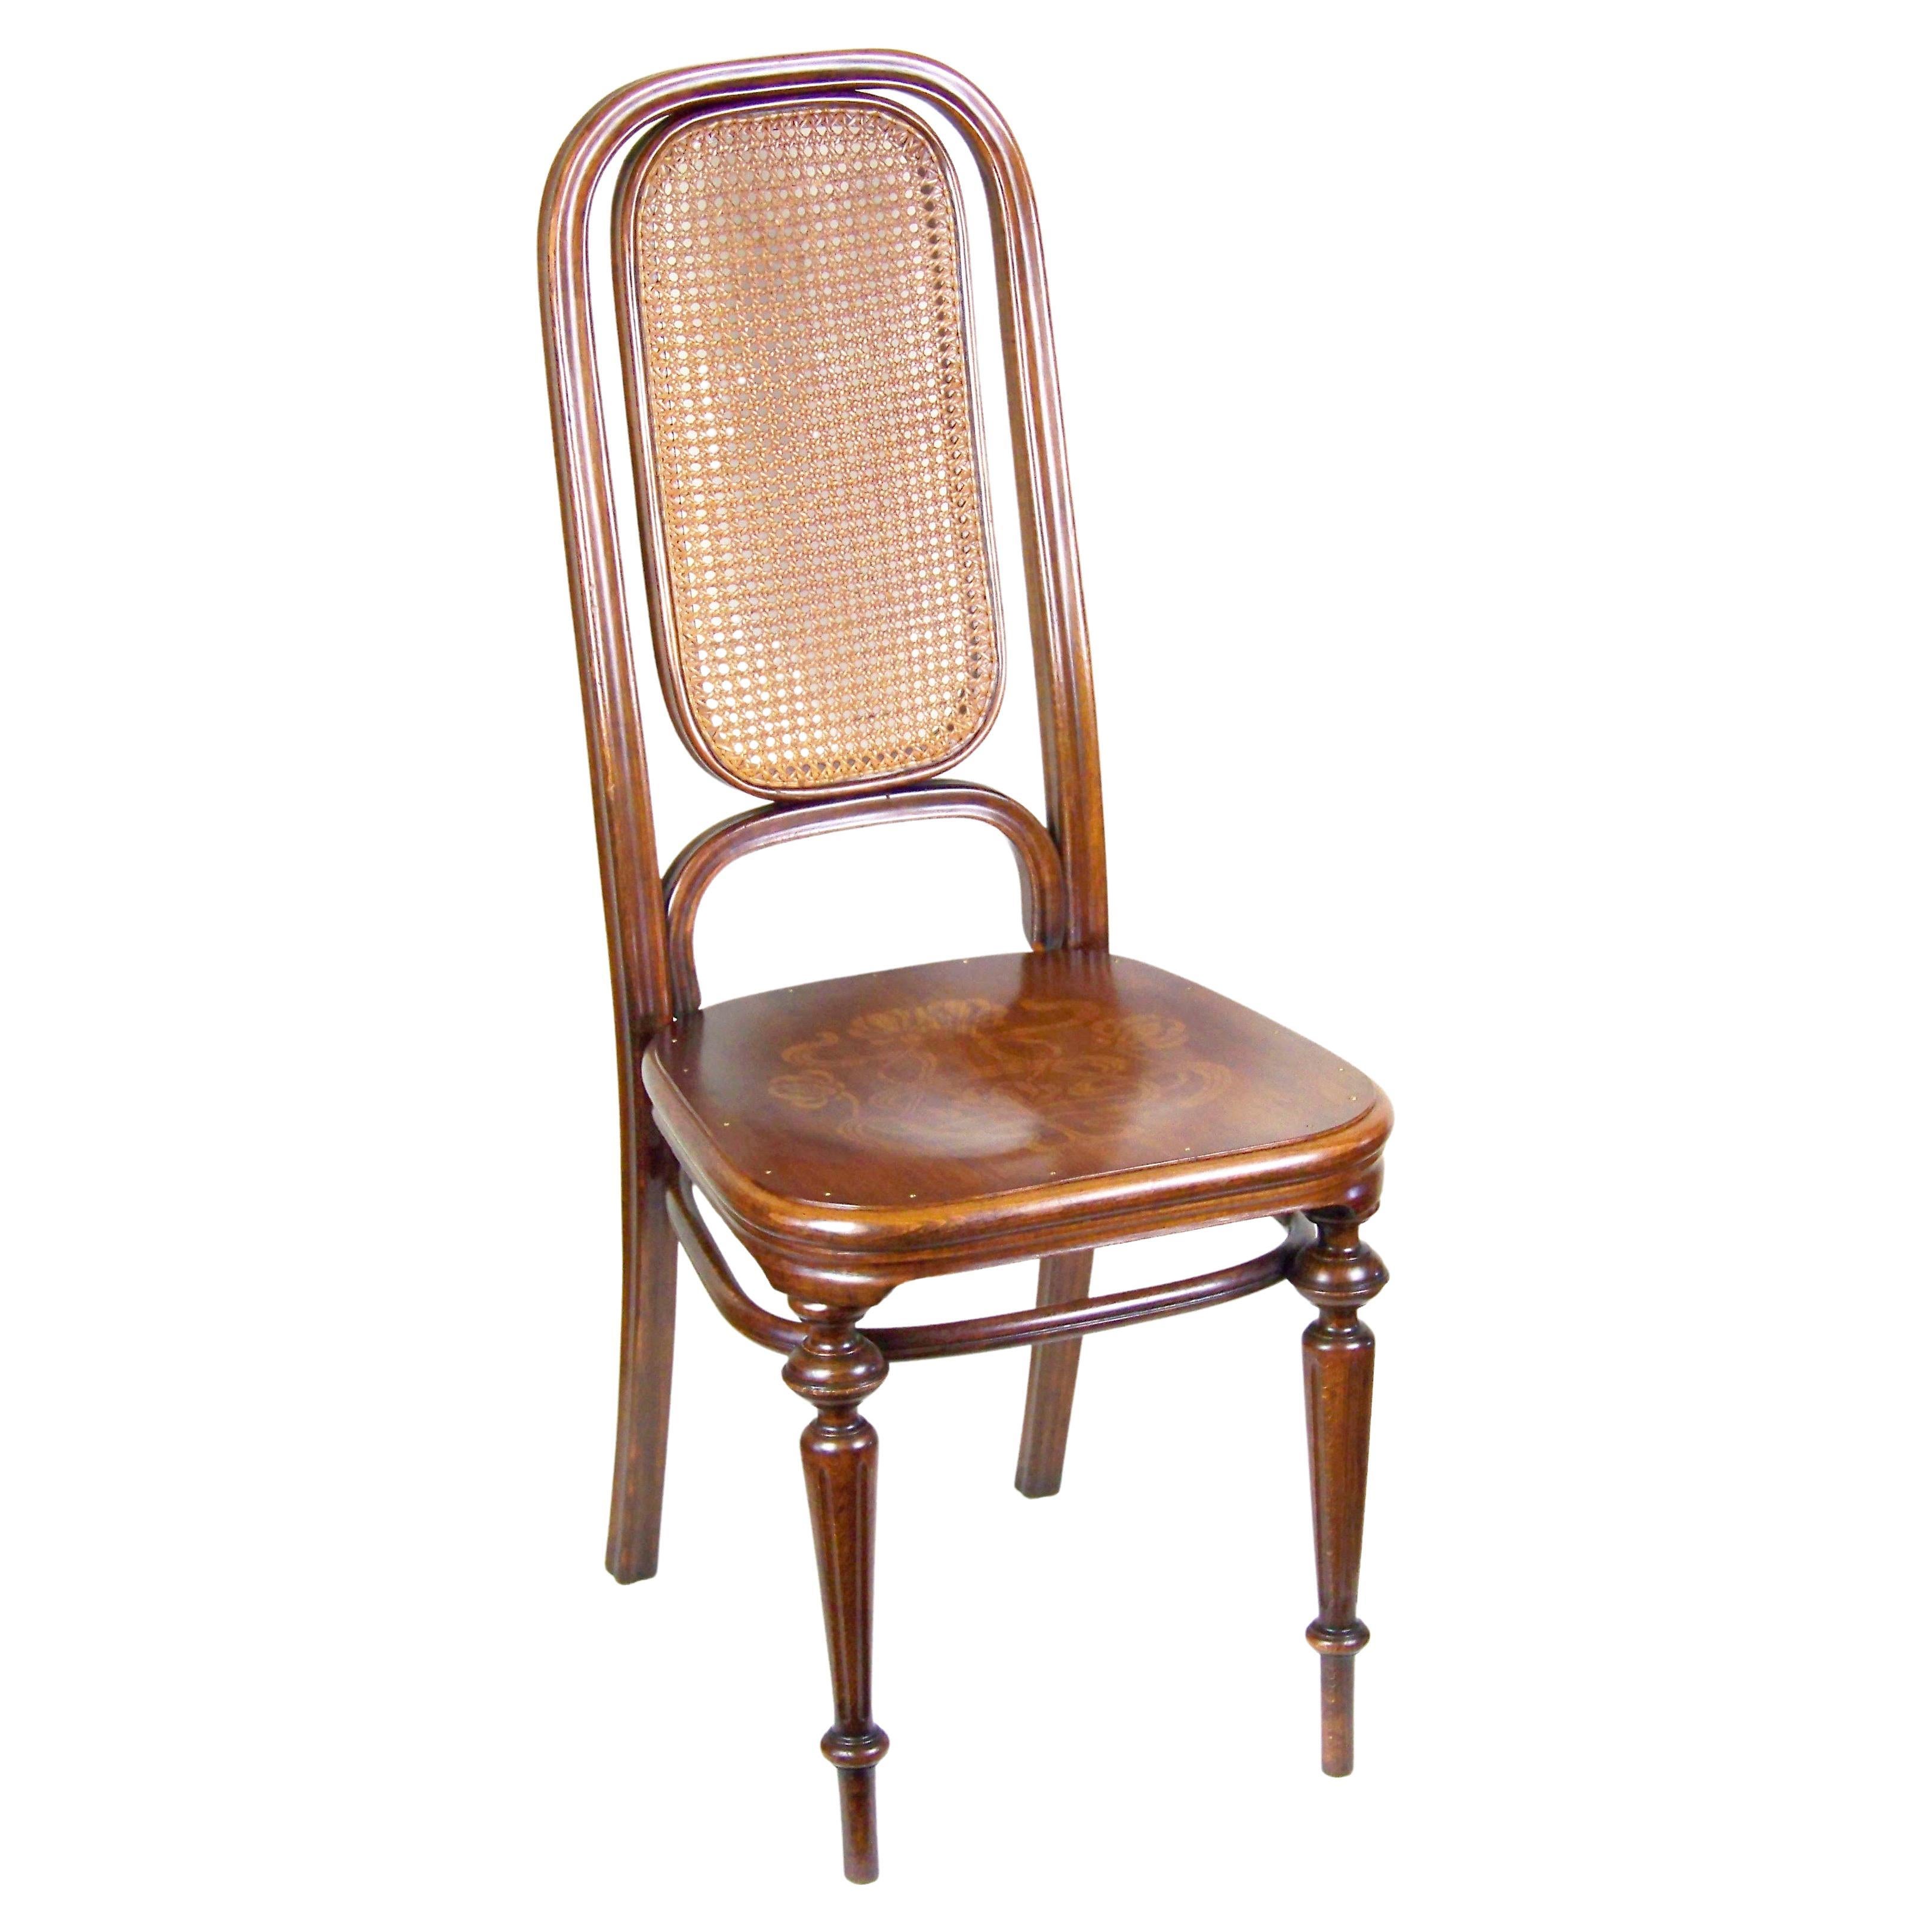 Chaise Thonet Nr.32, depuis 1883